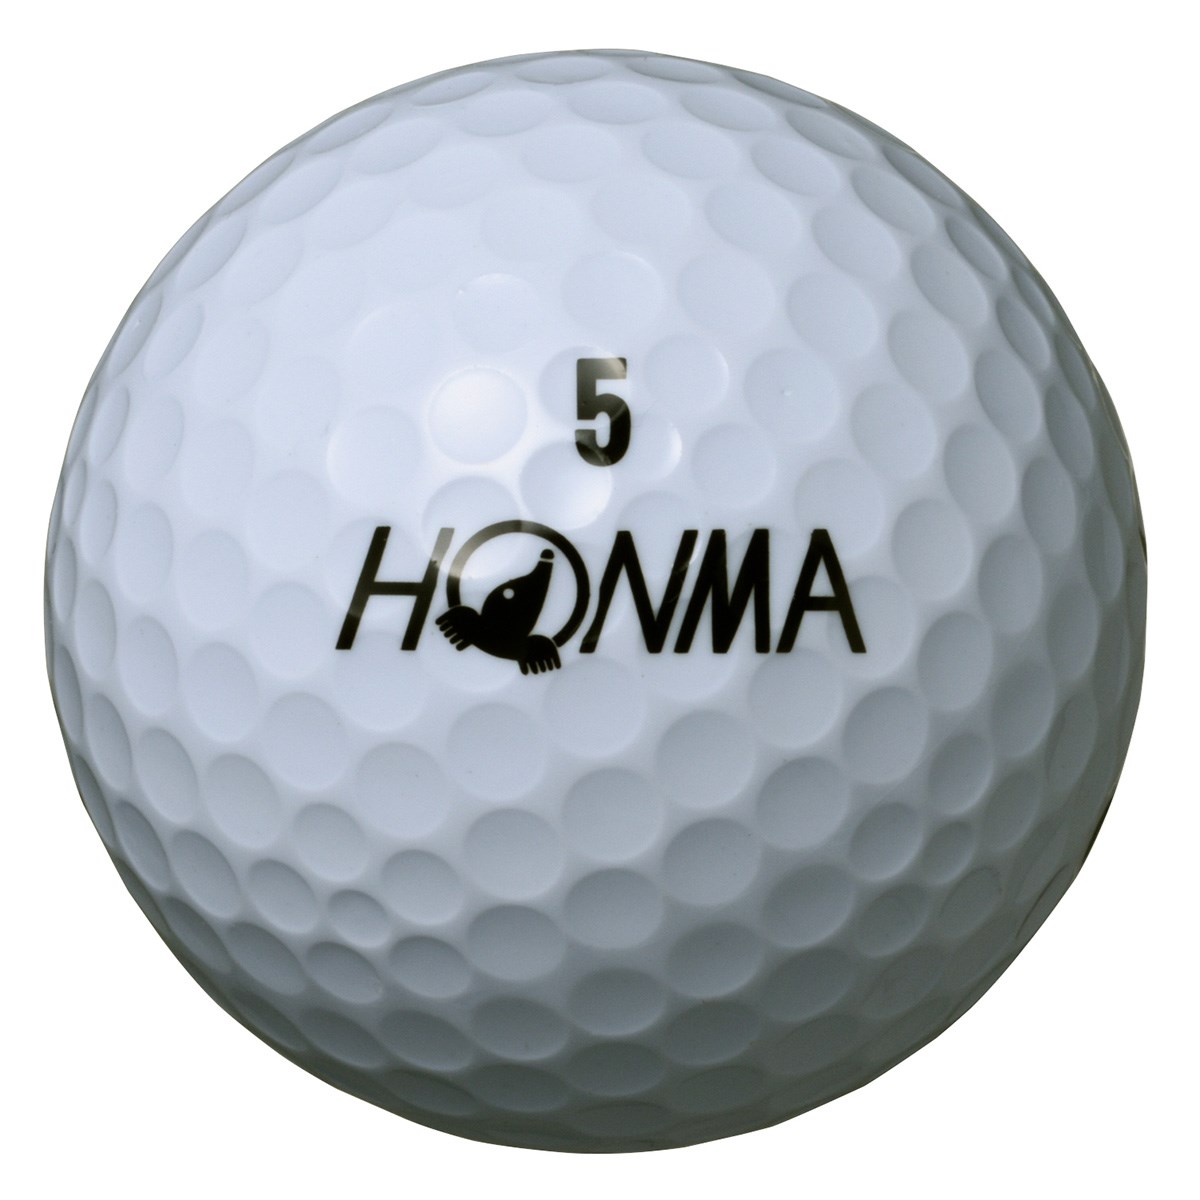 Dショッピング 本間ゴルフ Honma D1 ボール 年モデル 1ダース 12個入り ホワイト ハイナンバー カテゴリ ゴルフボールの販売できる商品 Gdoゴルフショップ ドコモの通販サイト